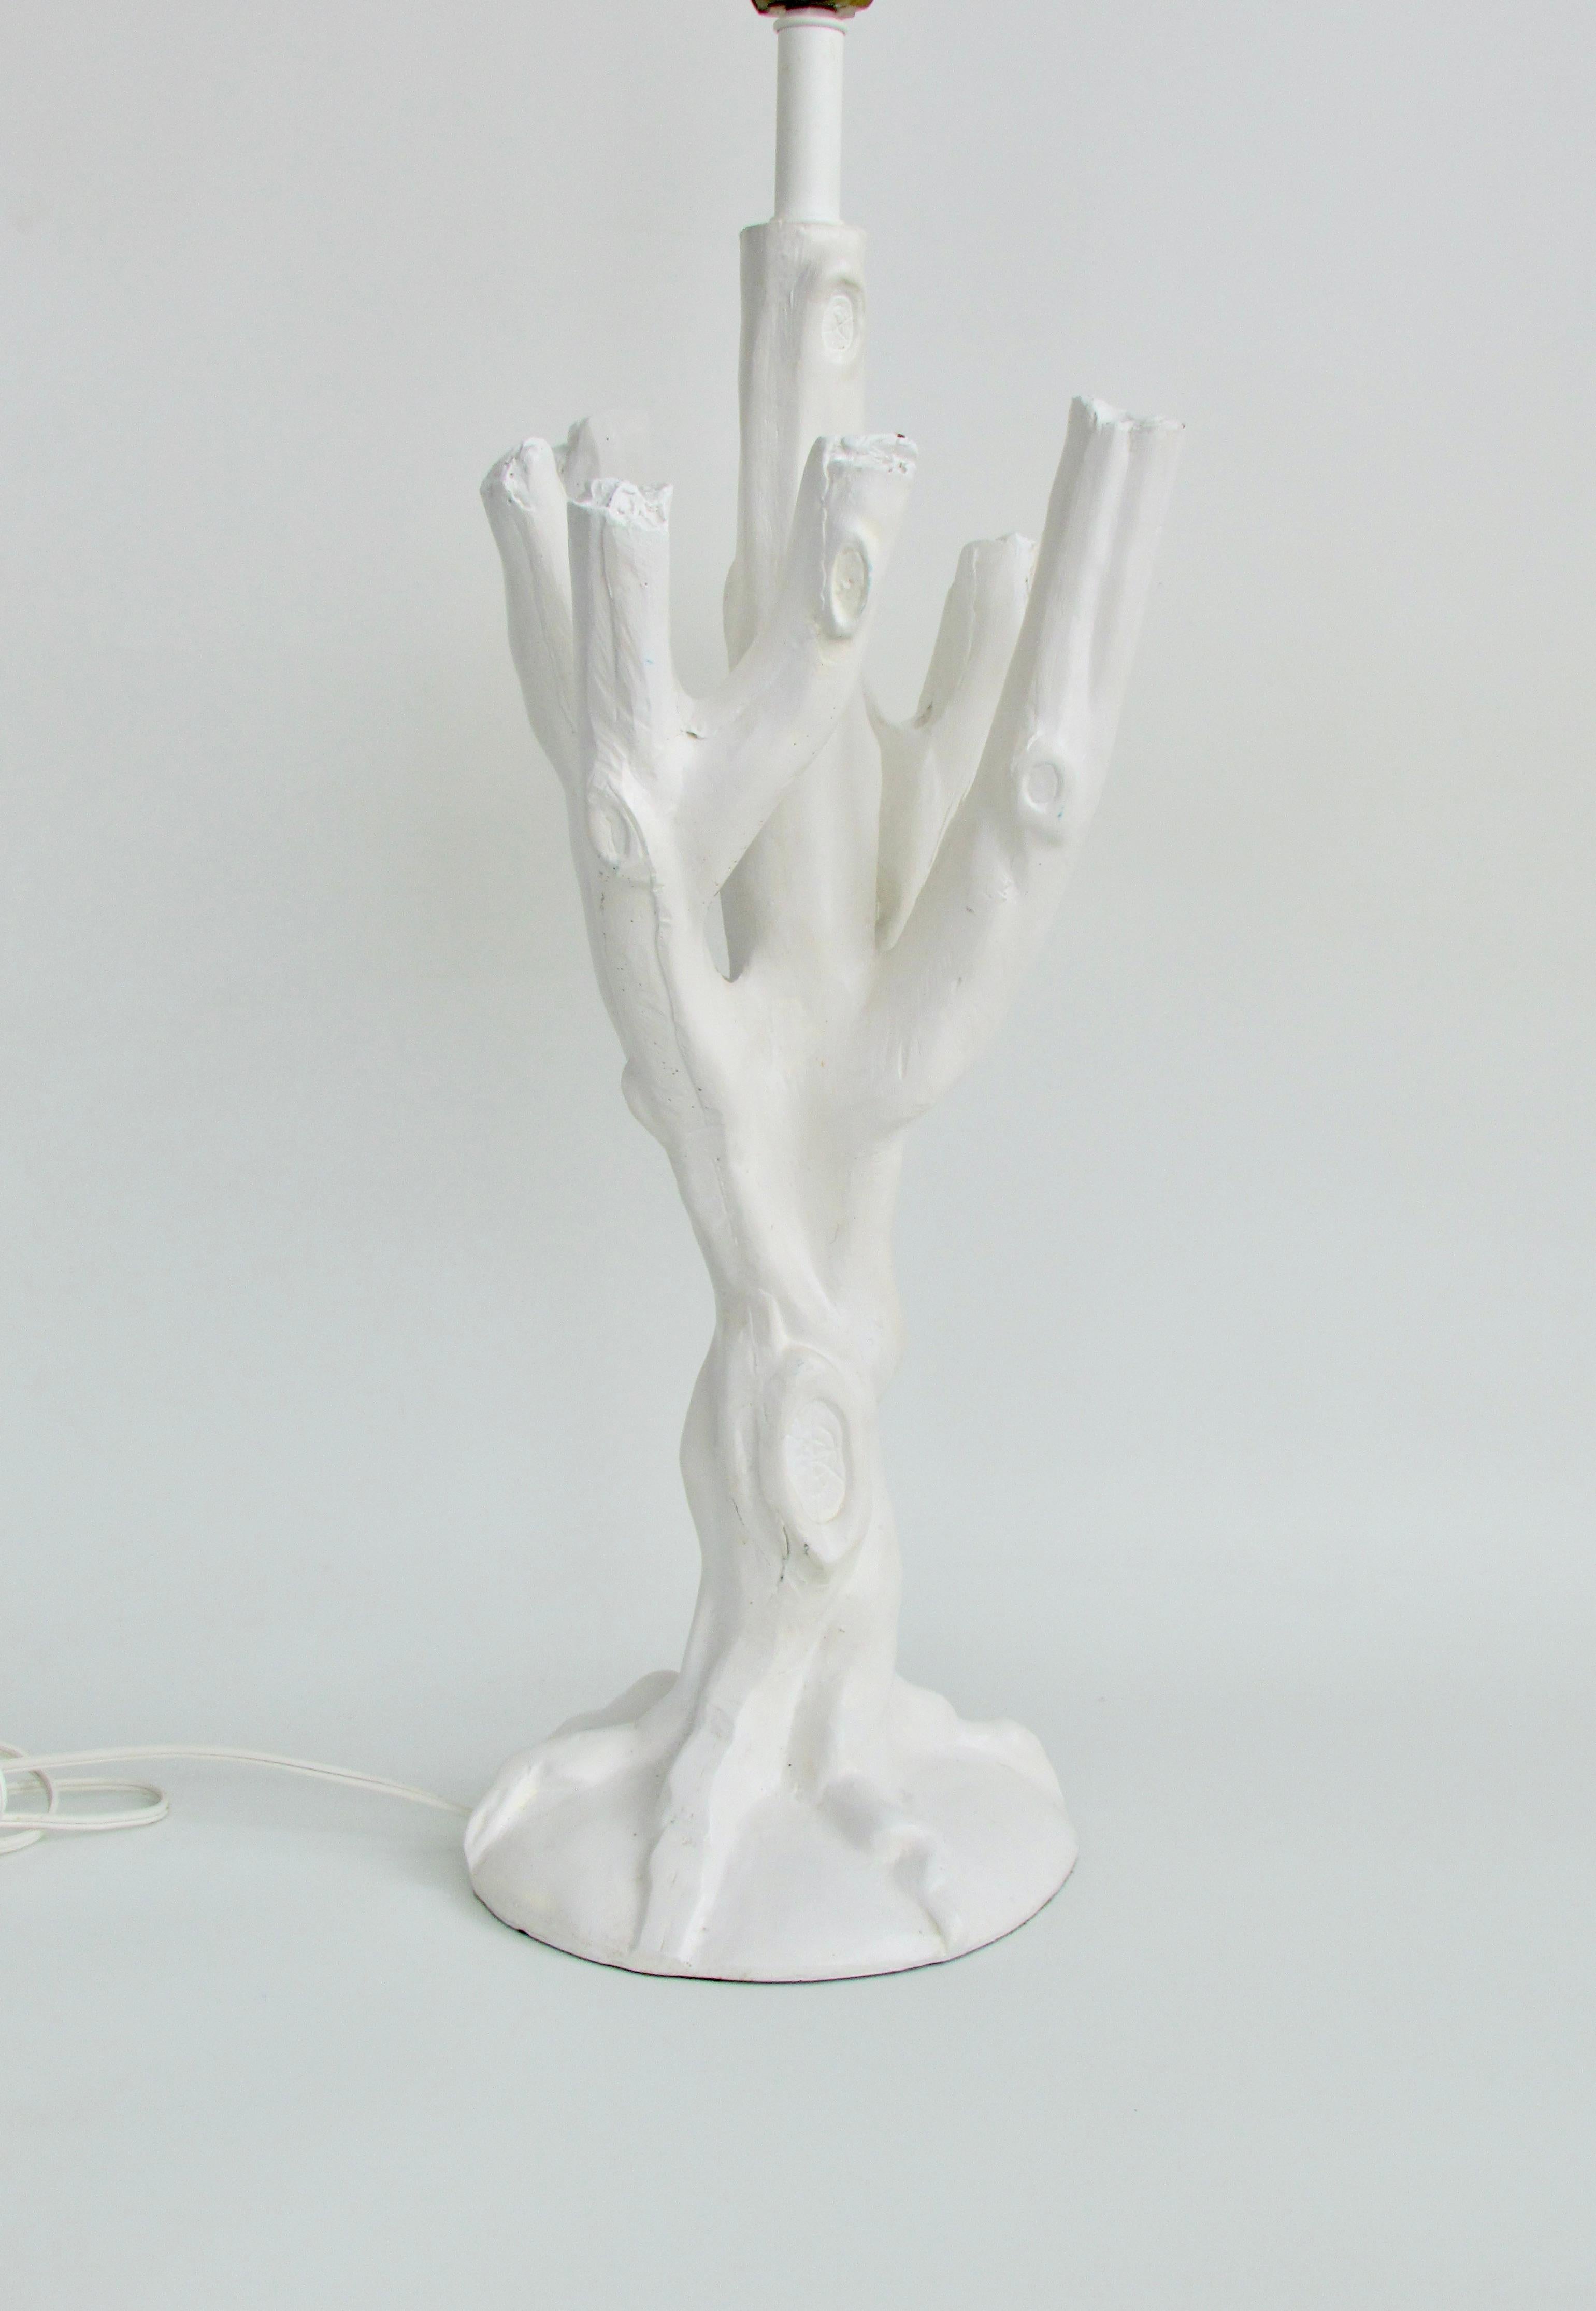 Forme organique d'une branche d'arbre en finition blanche . Très proche du style de John Dickinson. Le corps de la lampe mesure 10